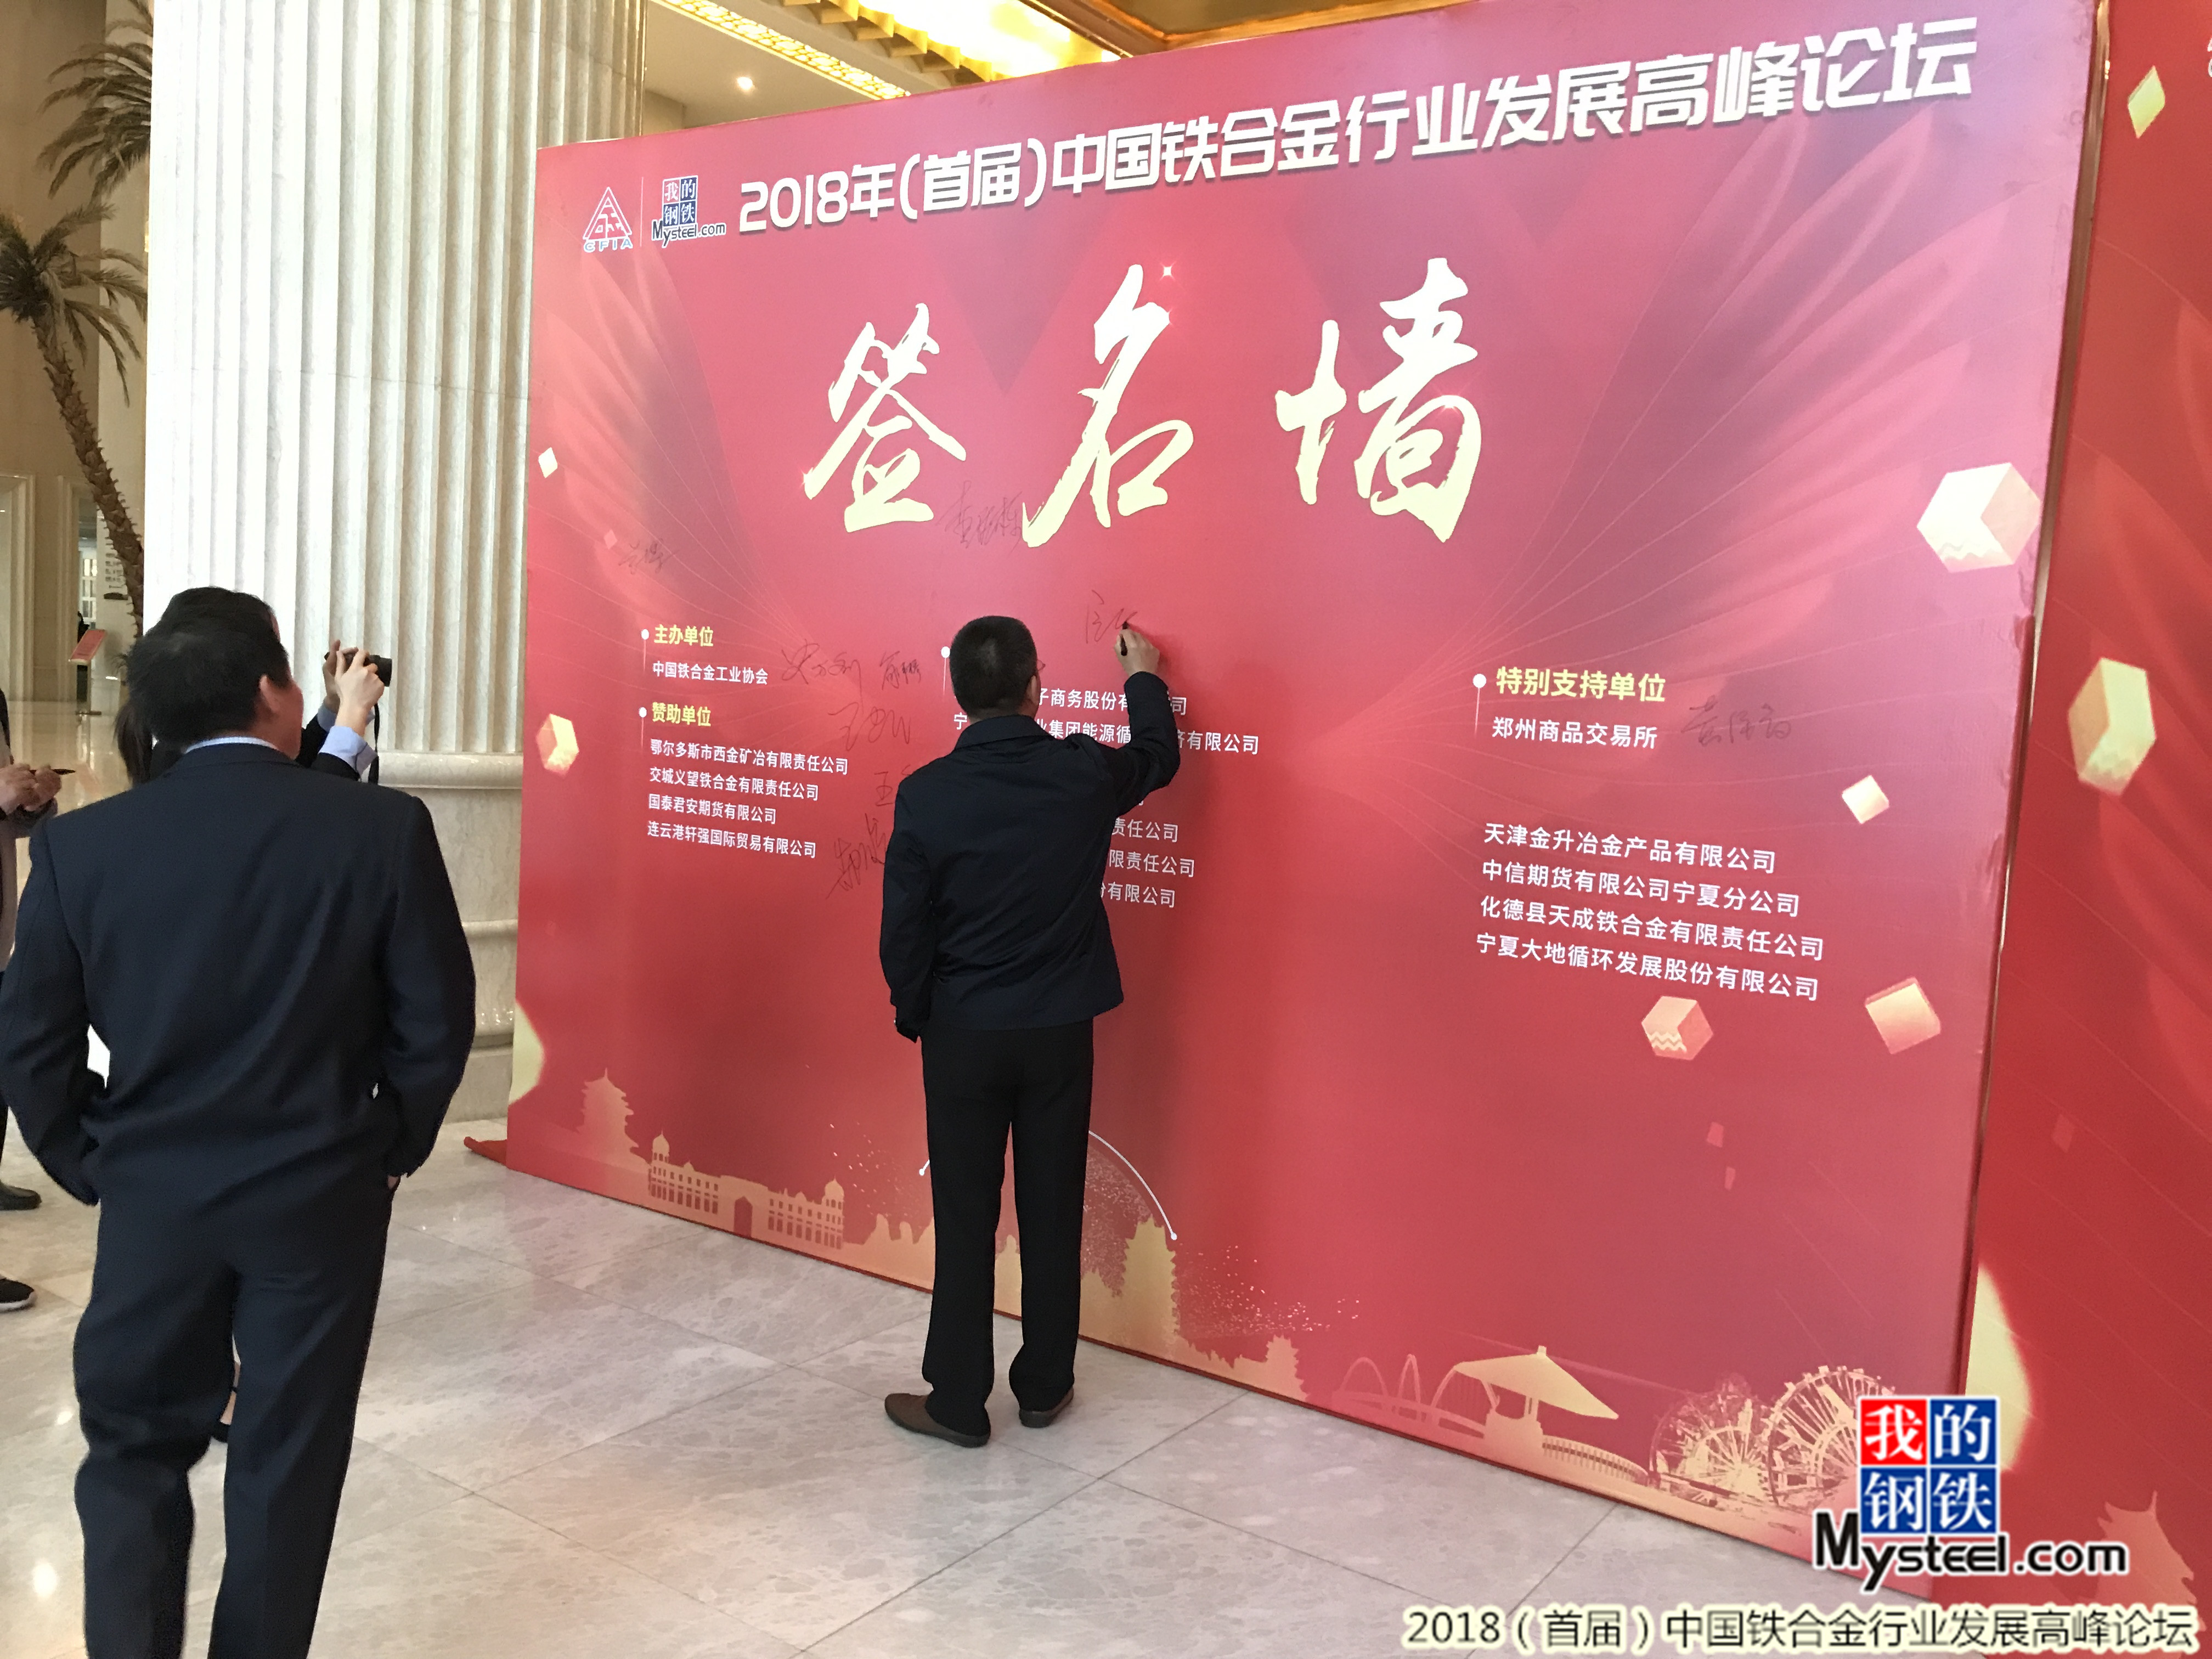 2018(首届)中国铁合金行业发展高峰论坛签到花絮